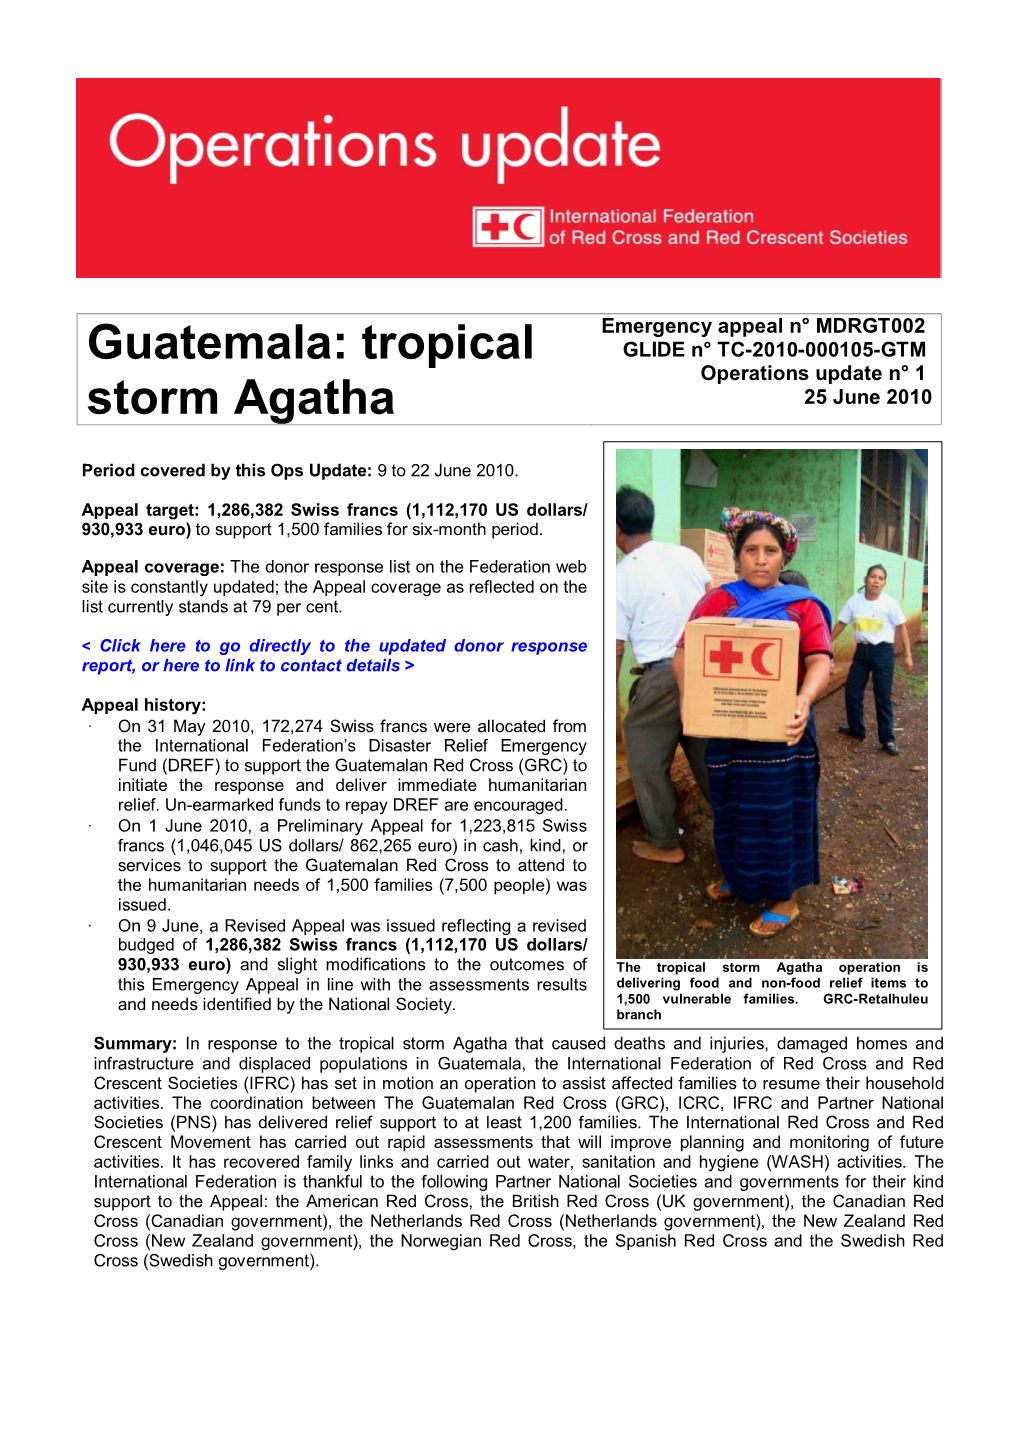 Tropical Storm Agatha